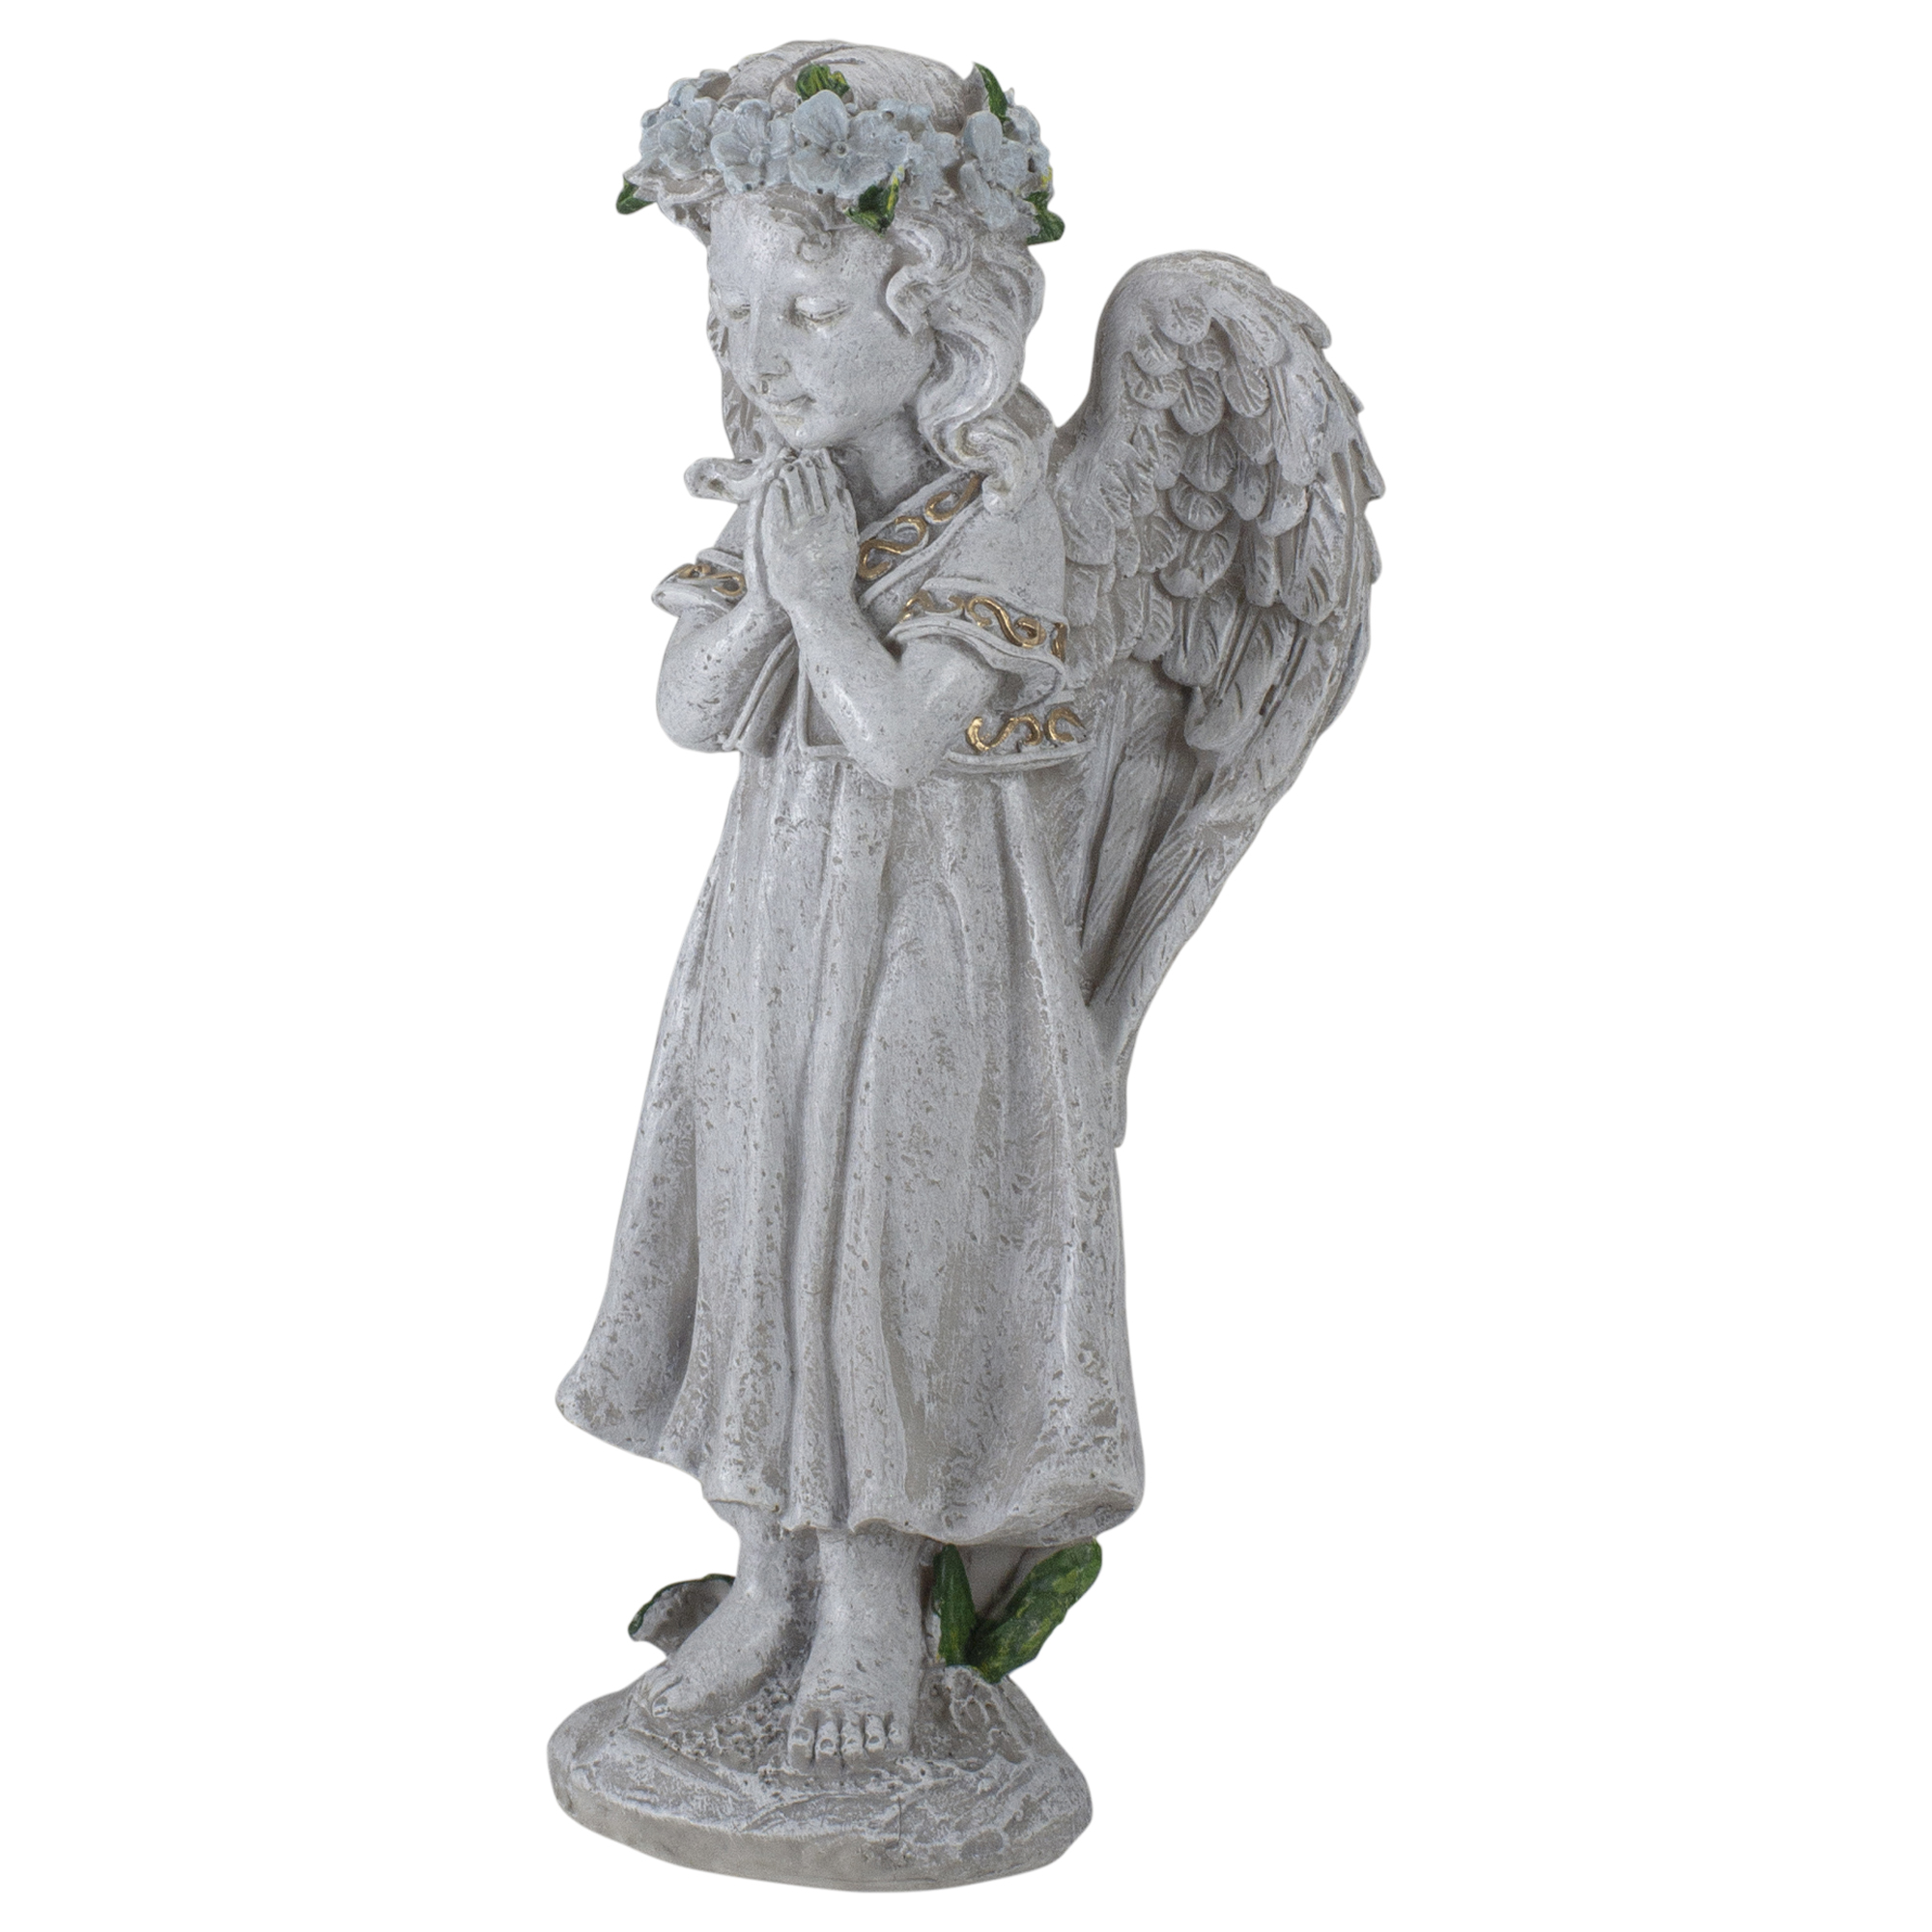 Northlight 10" Angel Standing in Prayer Outdoor Garden Statue - image 4 of 5